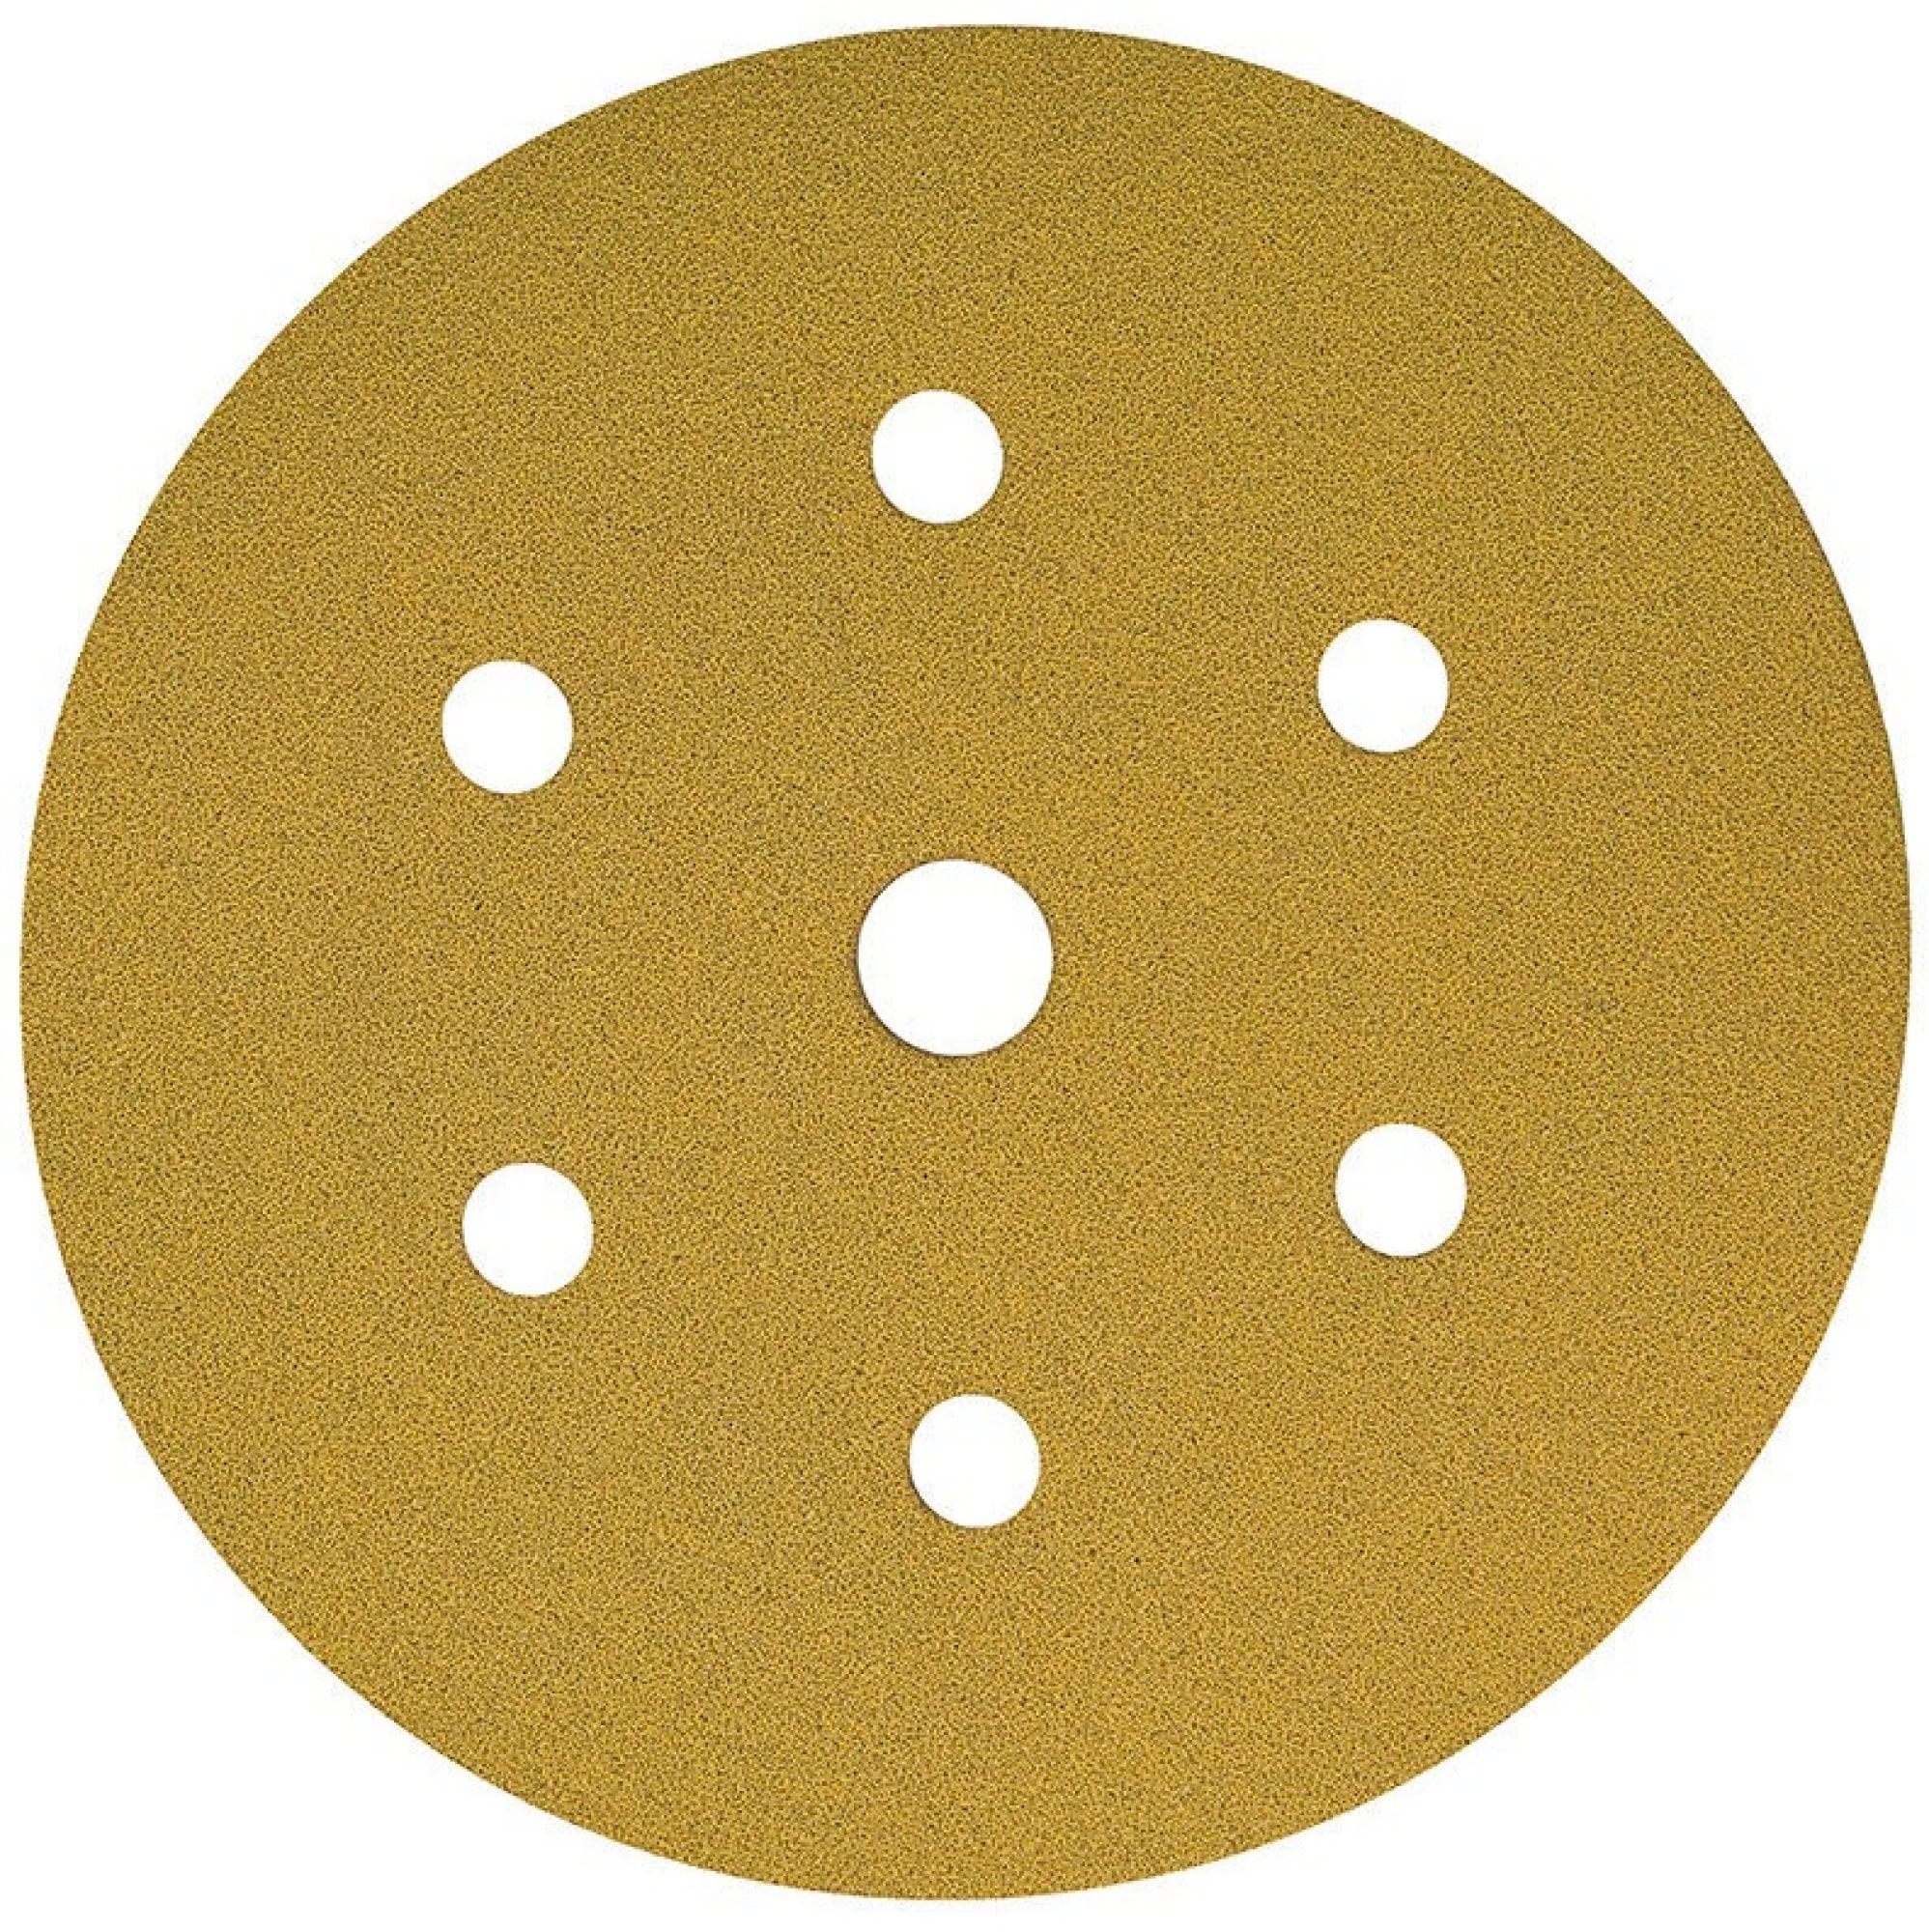 Mirka® Gold 2362809915, Ø 150 mm, P150, 7-fach gelocht, Kletthaftend, Schleifscheibe mit Aluminiumkorn